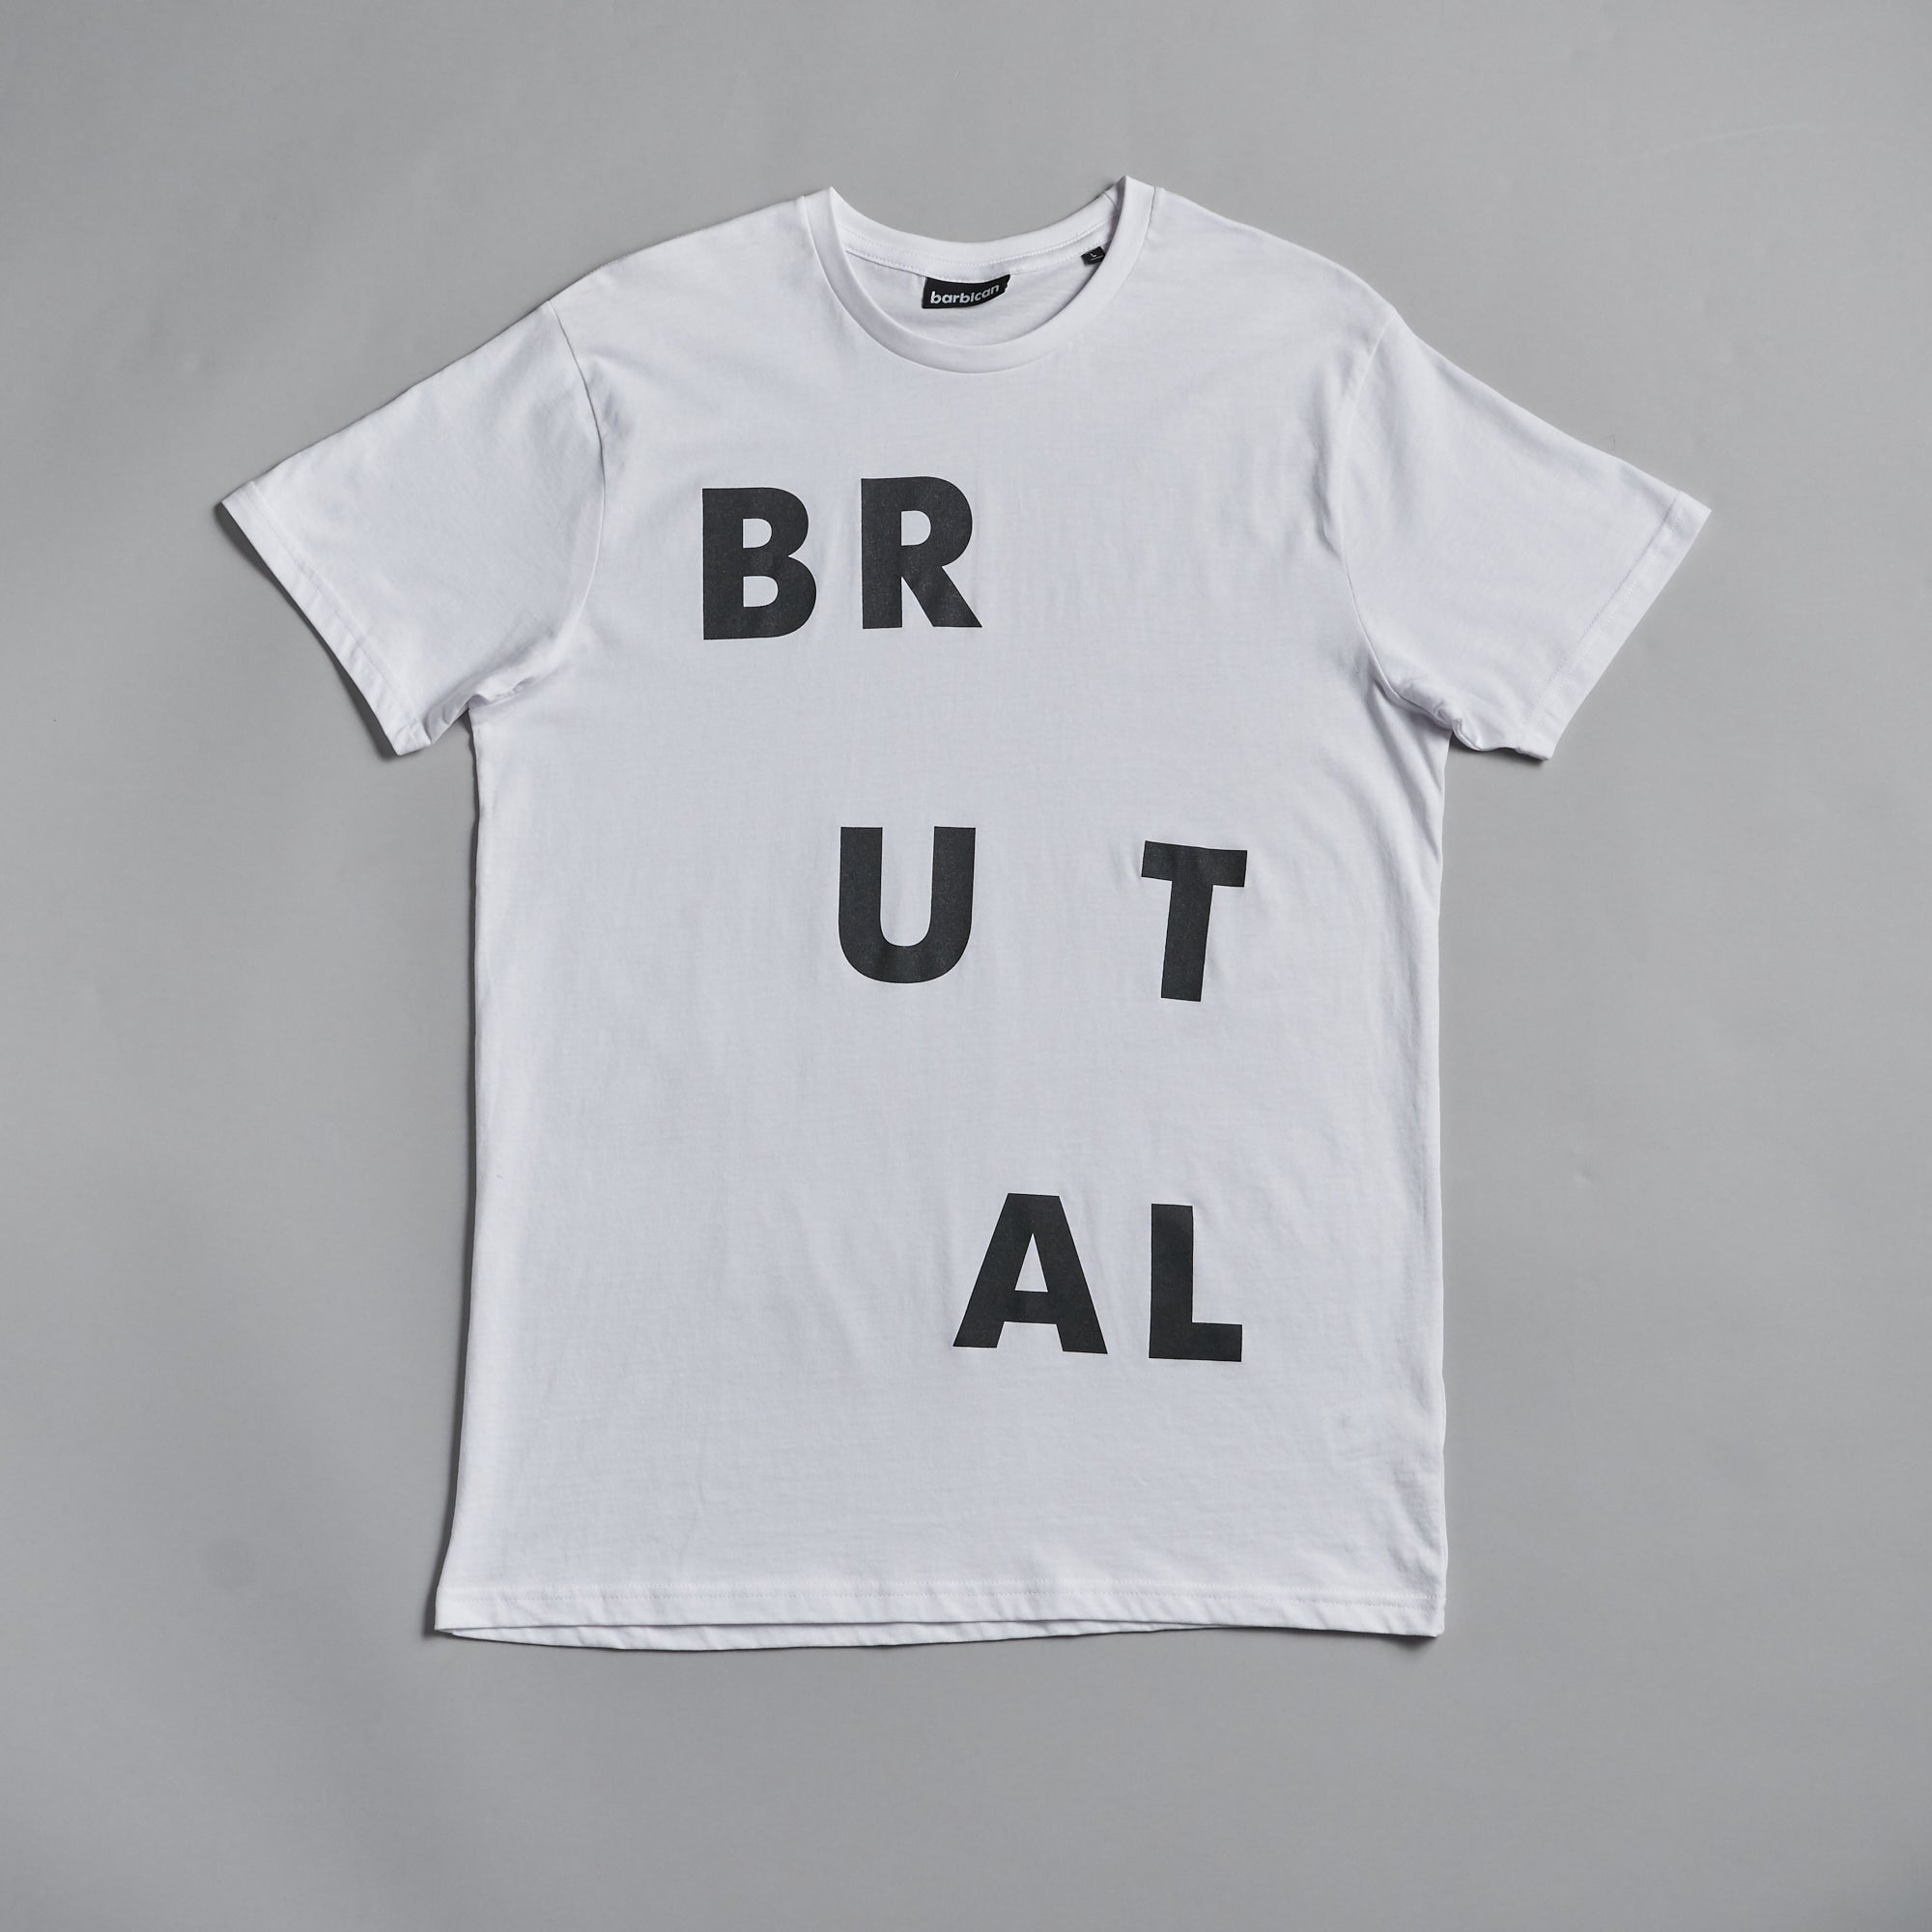 White Brutal T-shirt